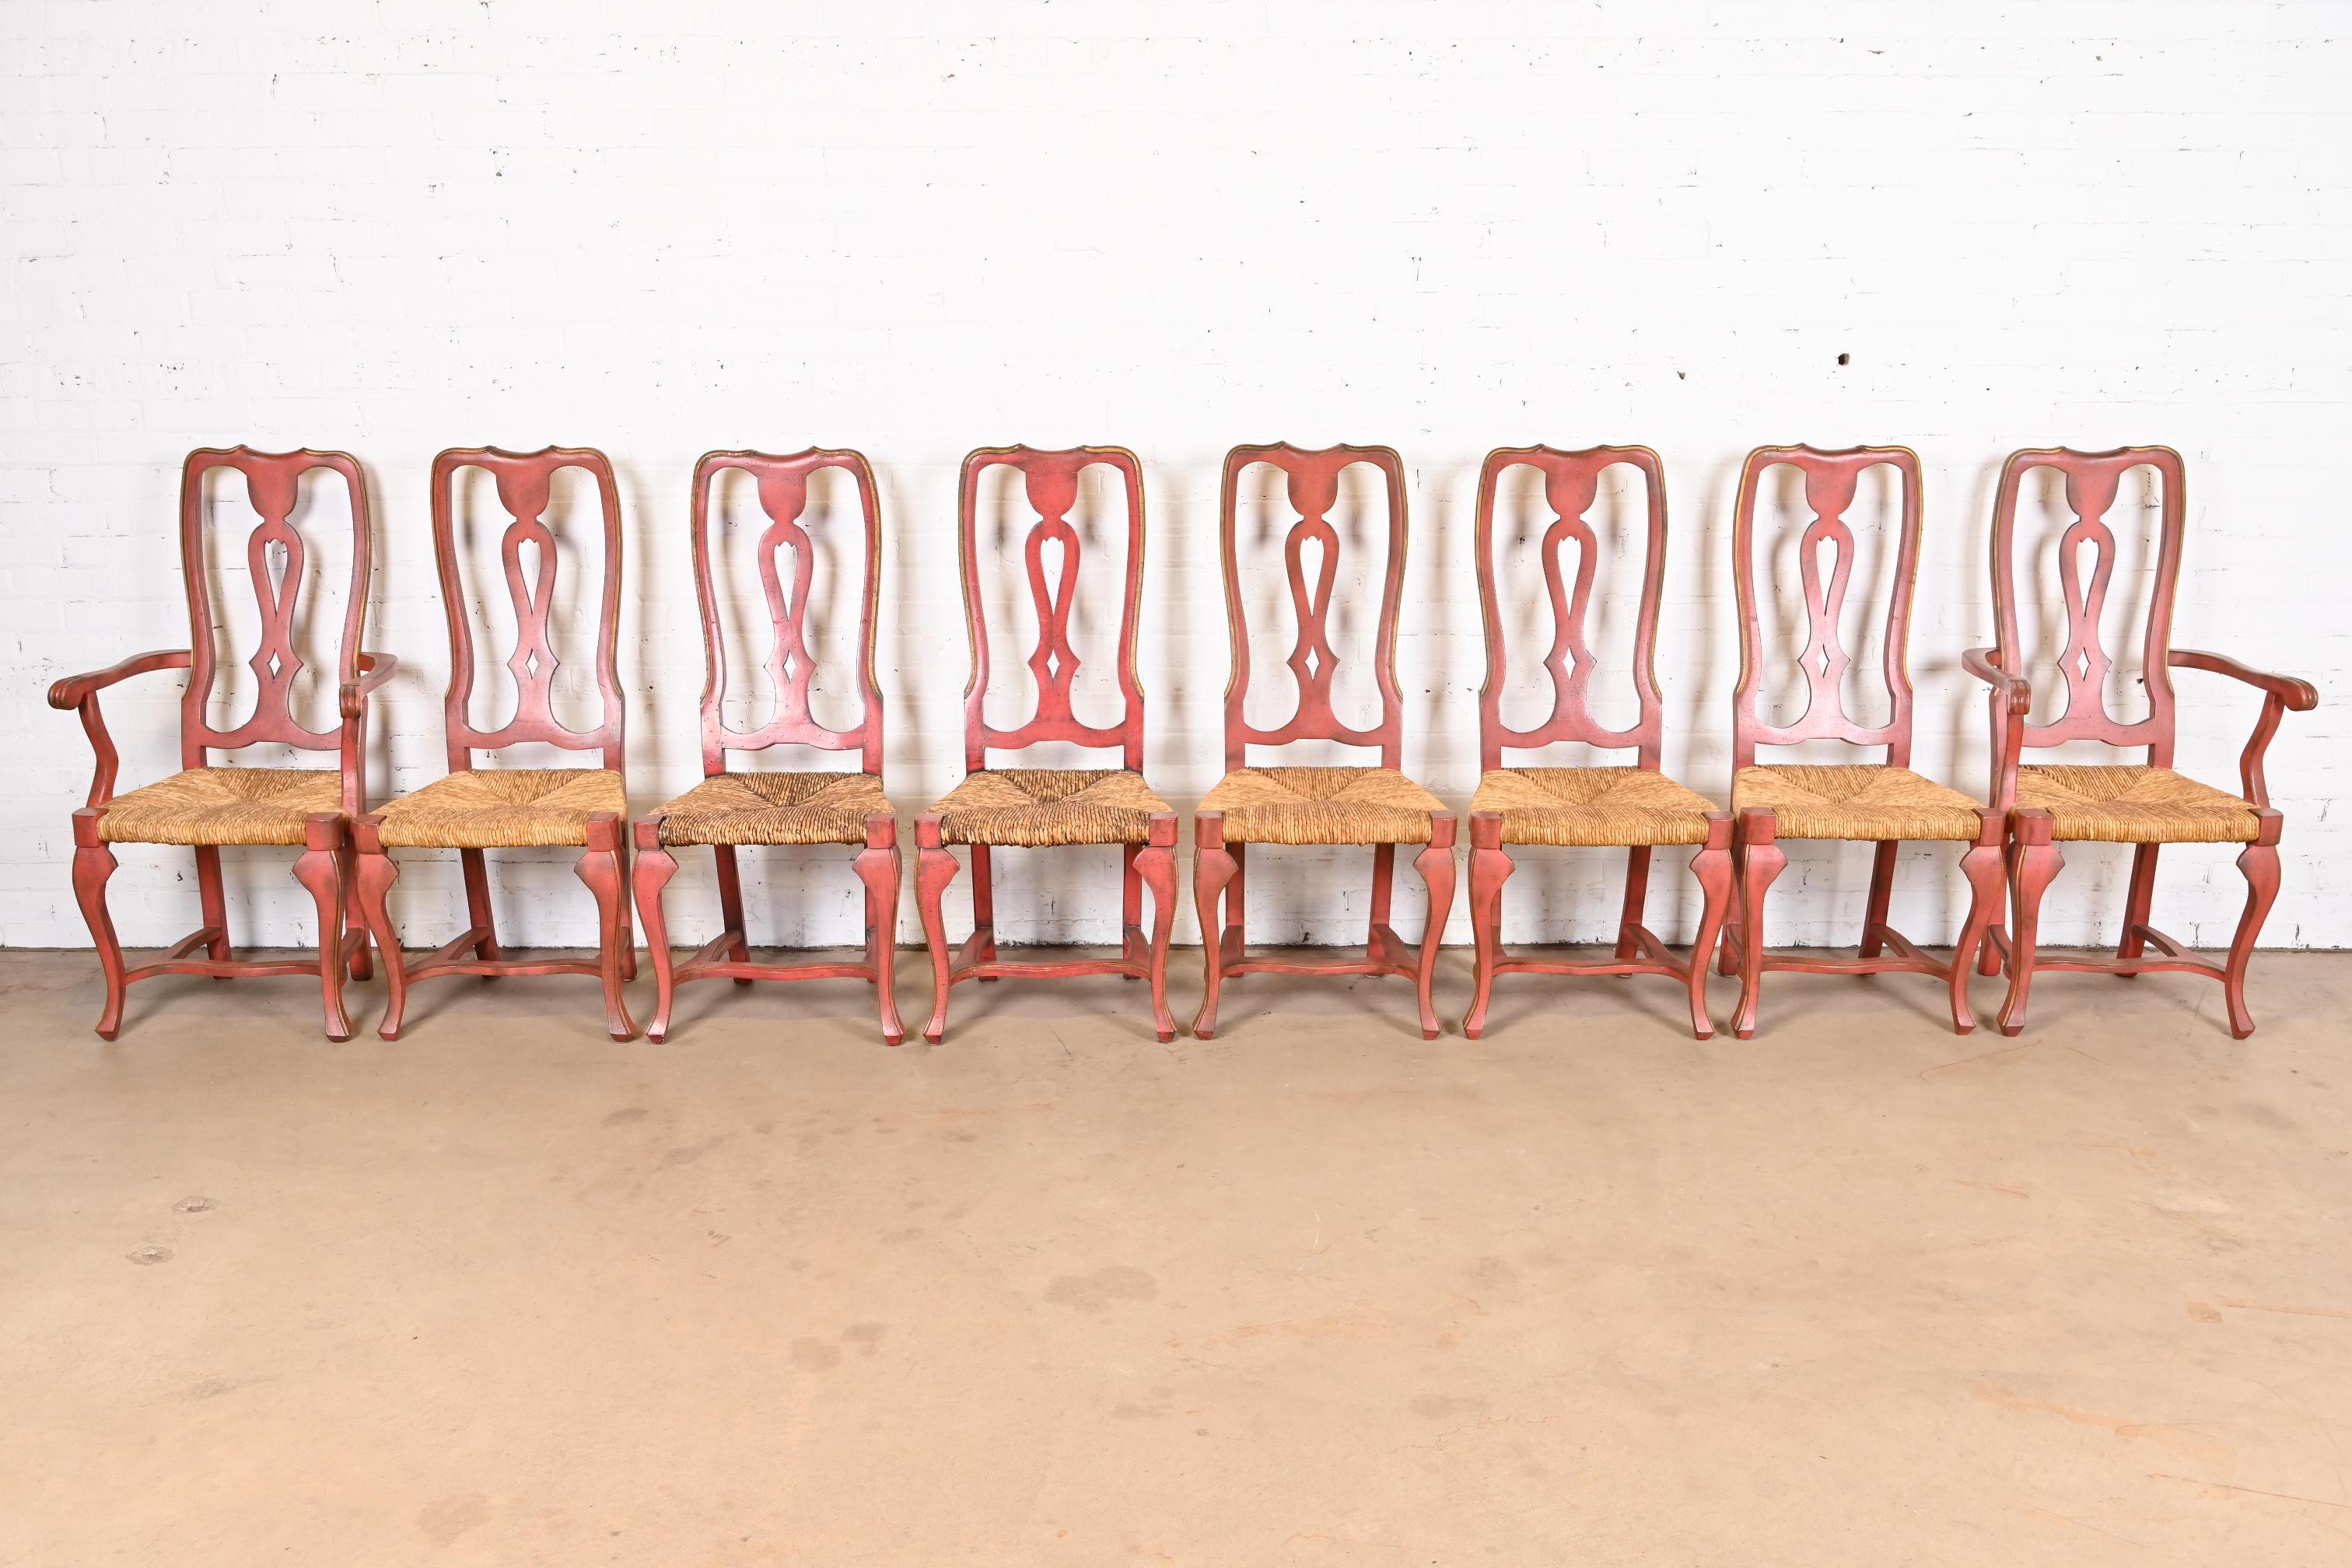 Un magnifique ensemble de huit chaises de salle à manger de style provincial ou campagnard français

À la manière de Henredon

États-Unis, fin du 20e siècle

Encadrement en noyer massif sculpté, peint en rouge et doré, avec sièges en jonc.

Mesures